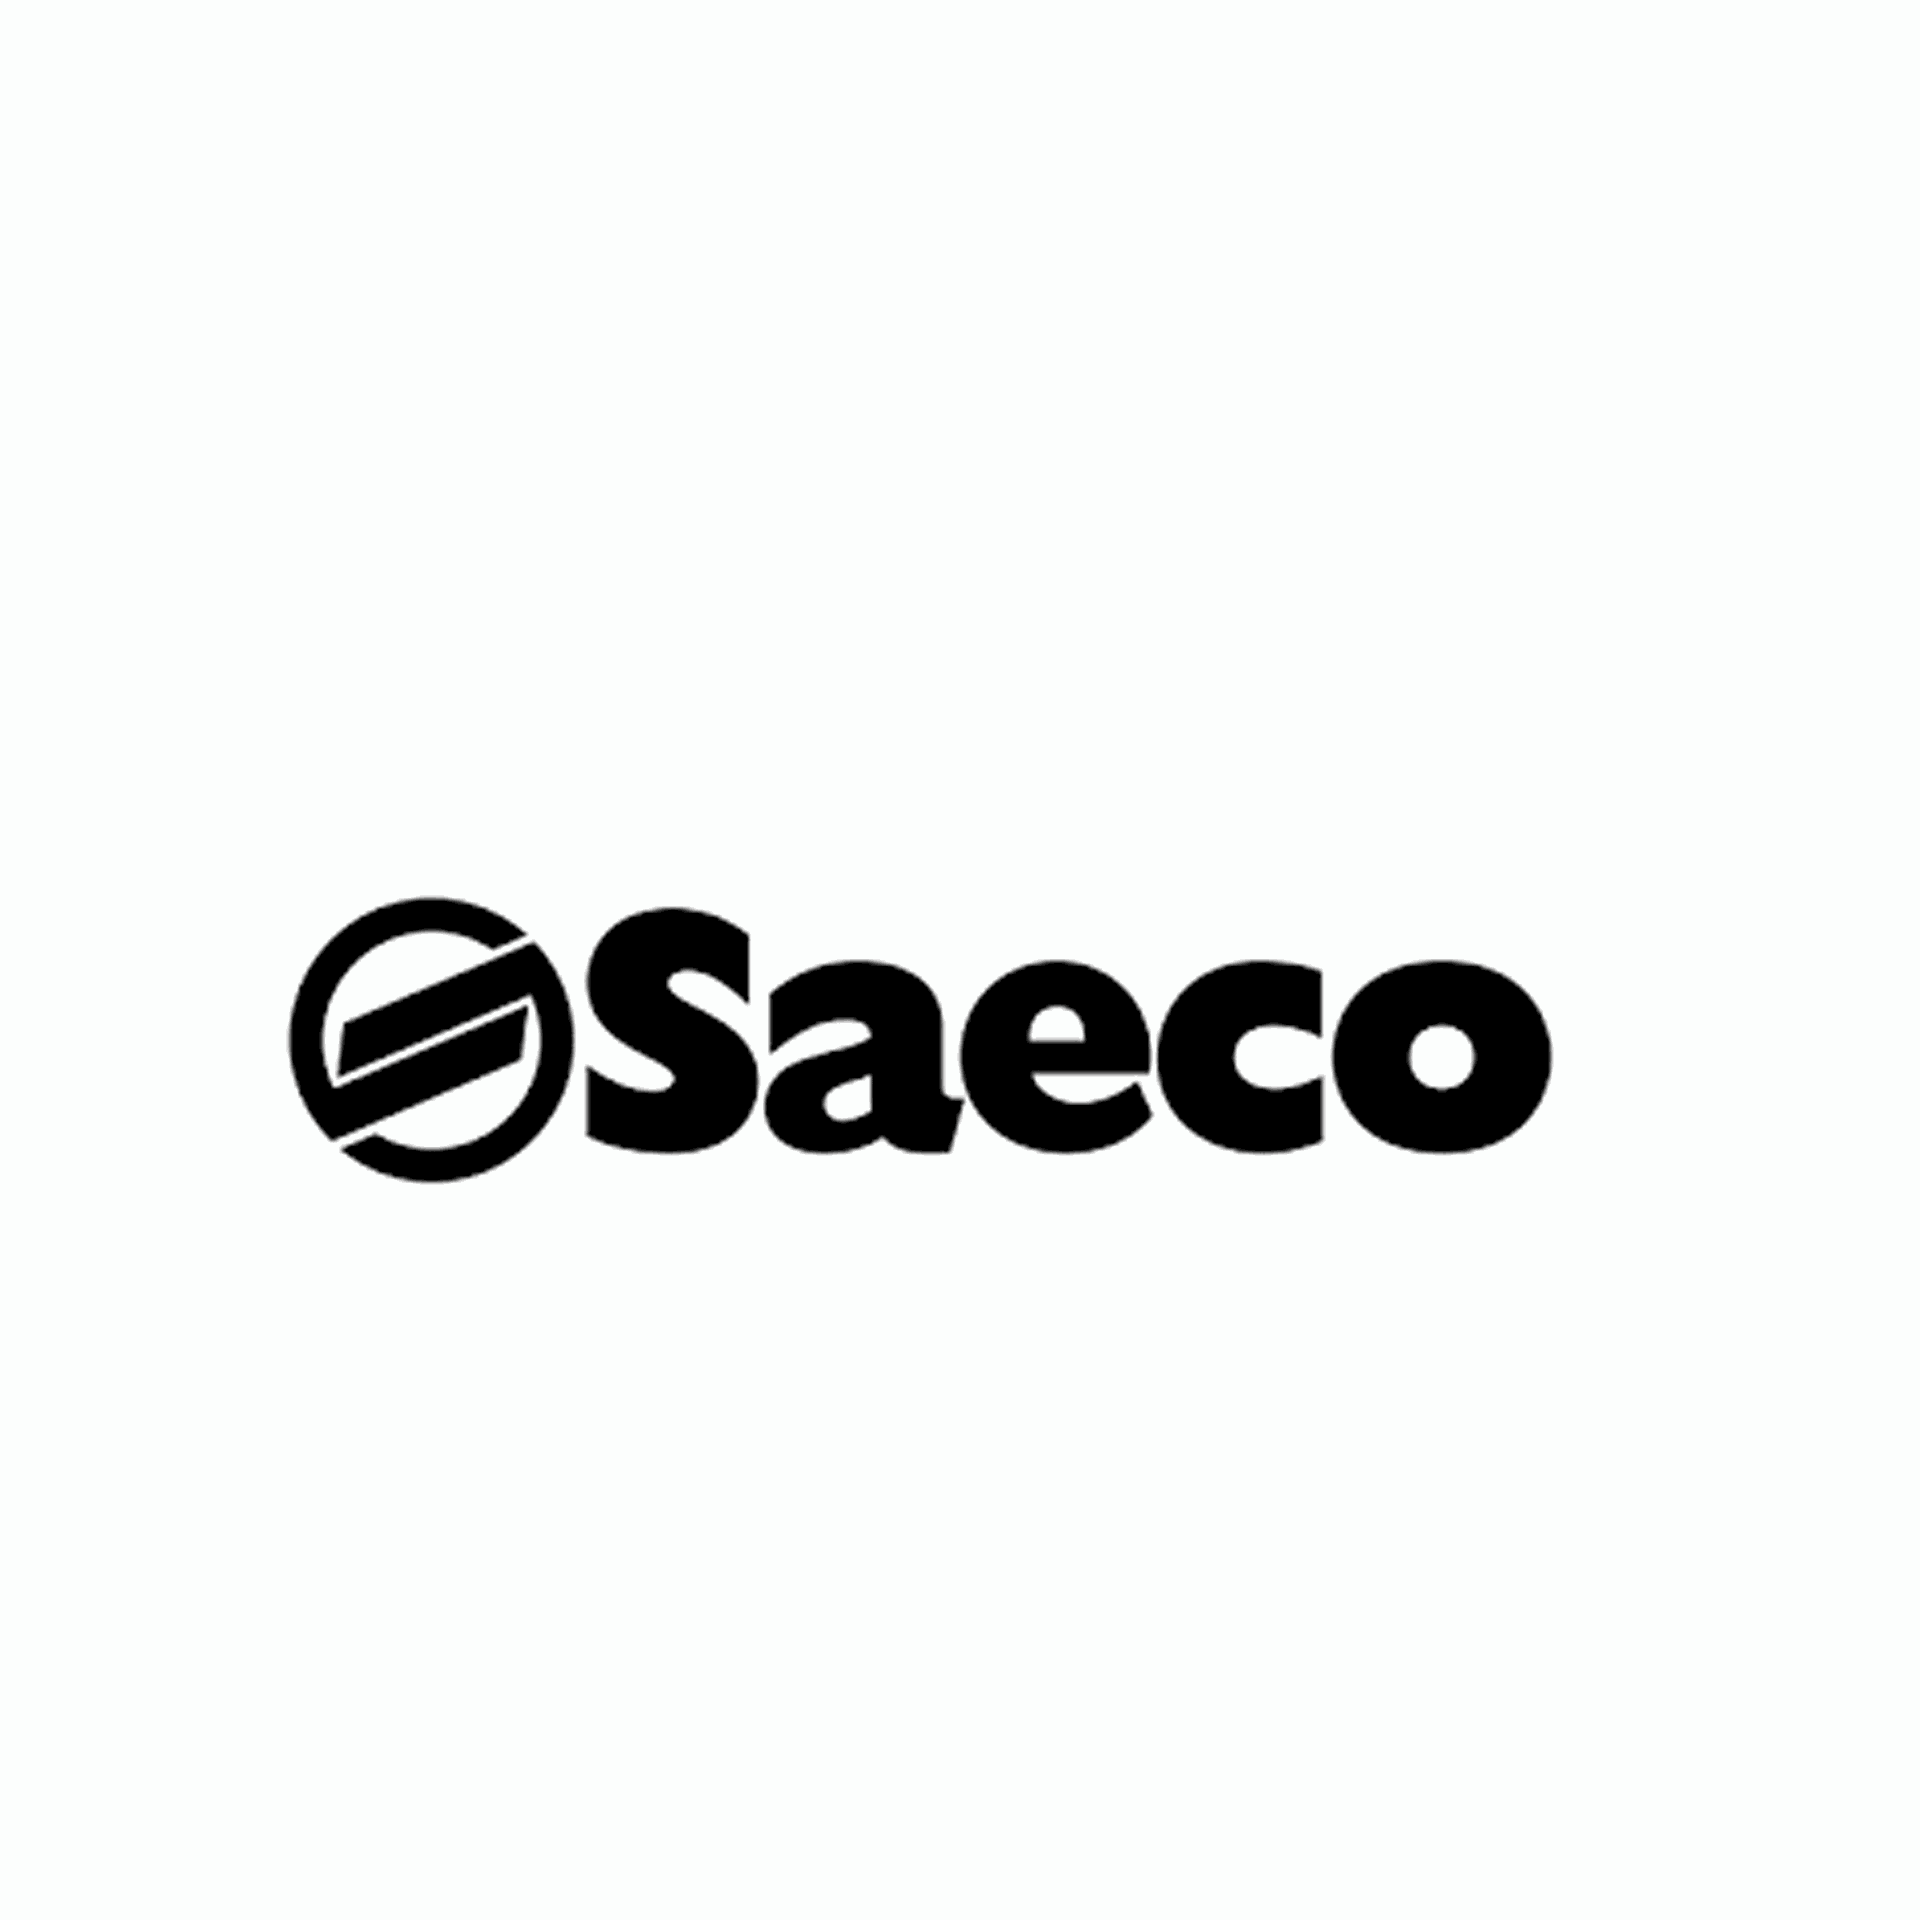 Product Brand: Saeco